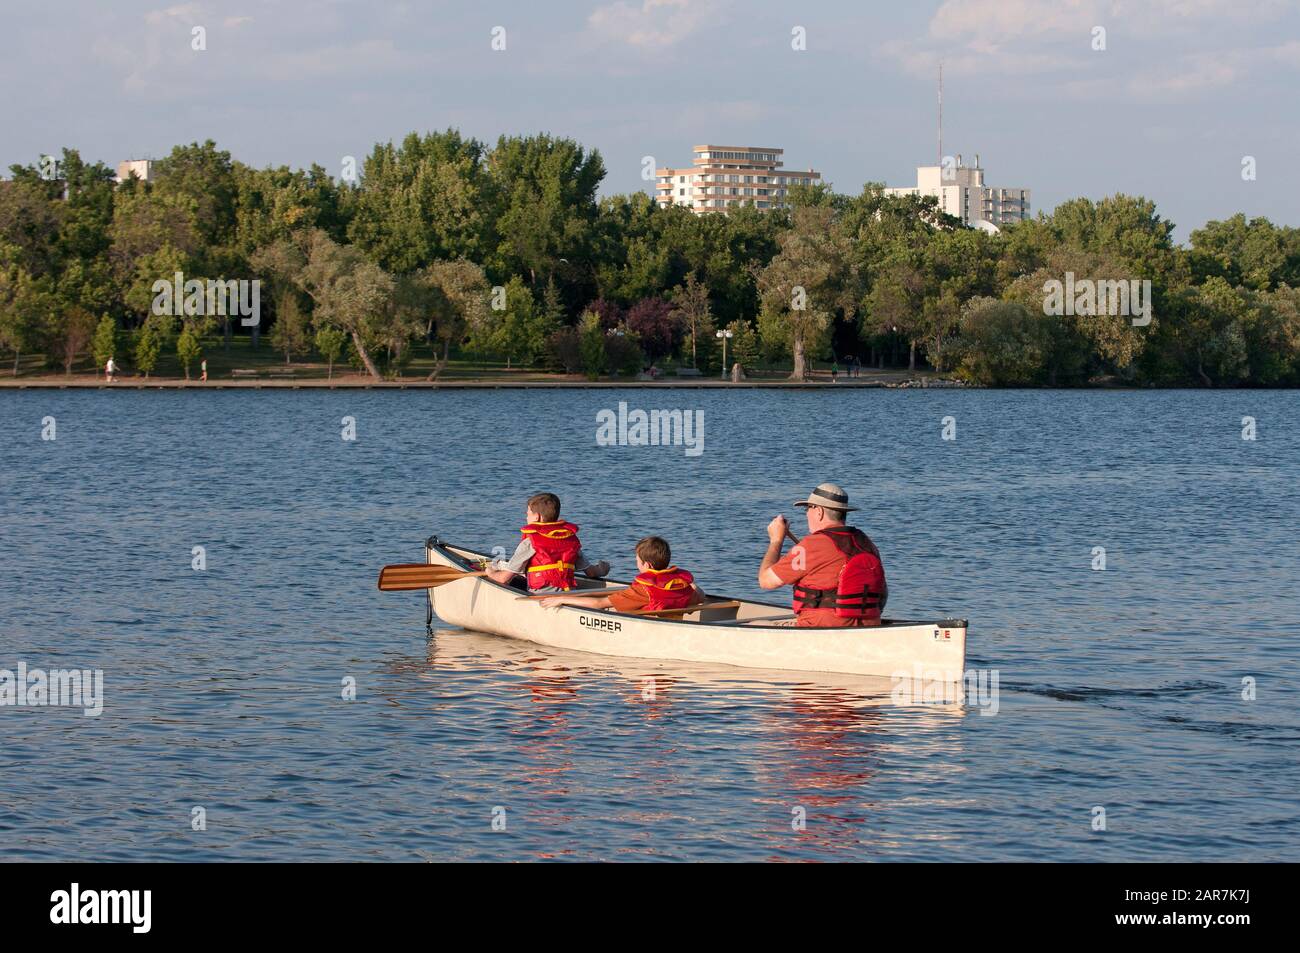 Canoeing in Wascana lake, Regina, Saskatchewan, Canada Stock Photo